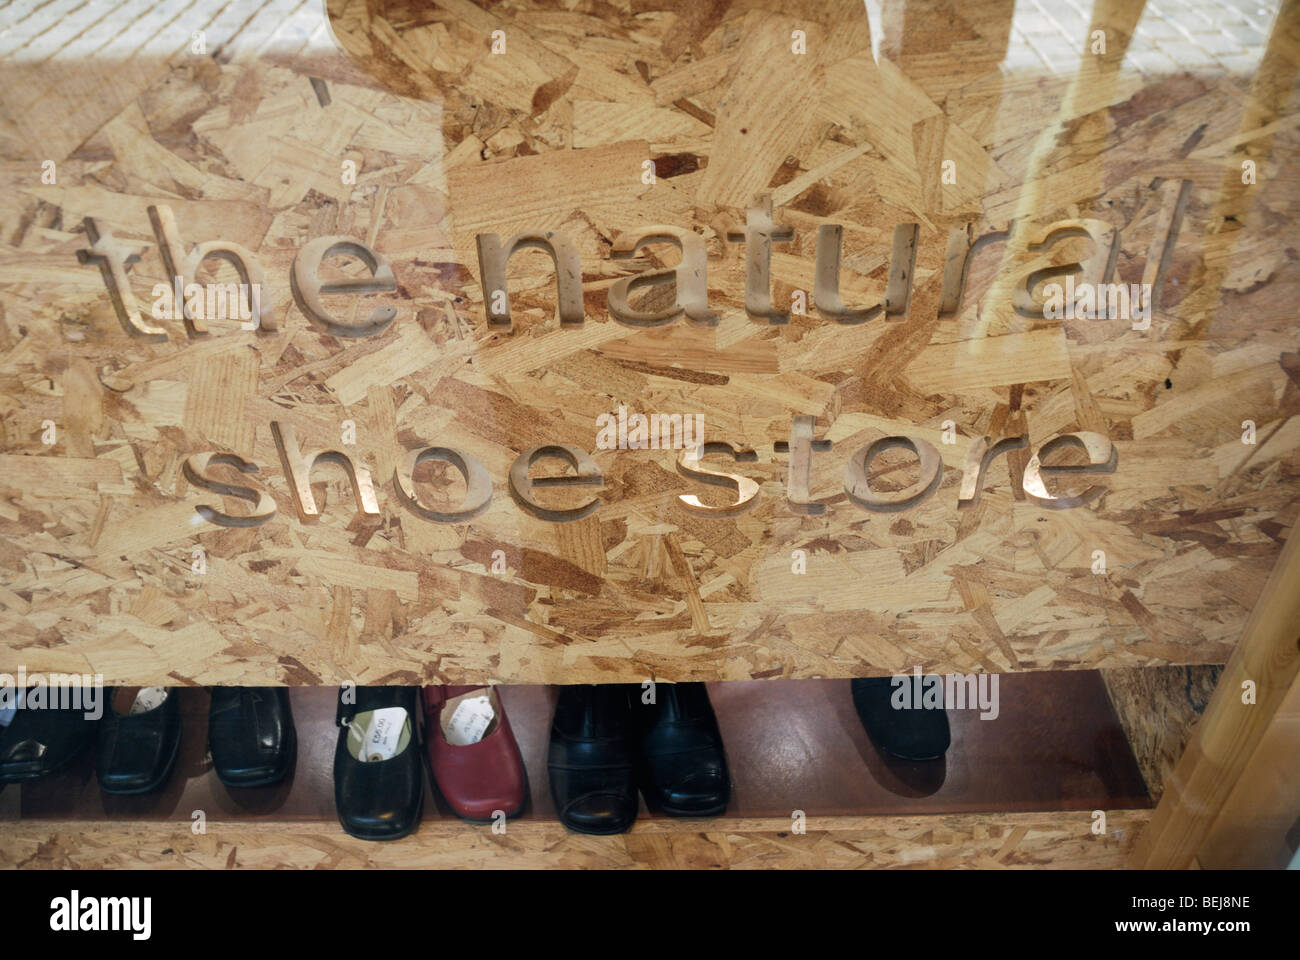 La scarpa naturale in negozio Neal Street, Covent Garden, Londra Foto Stock